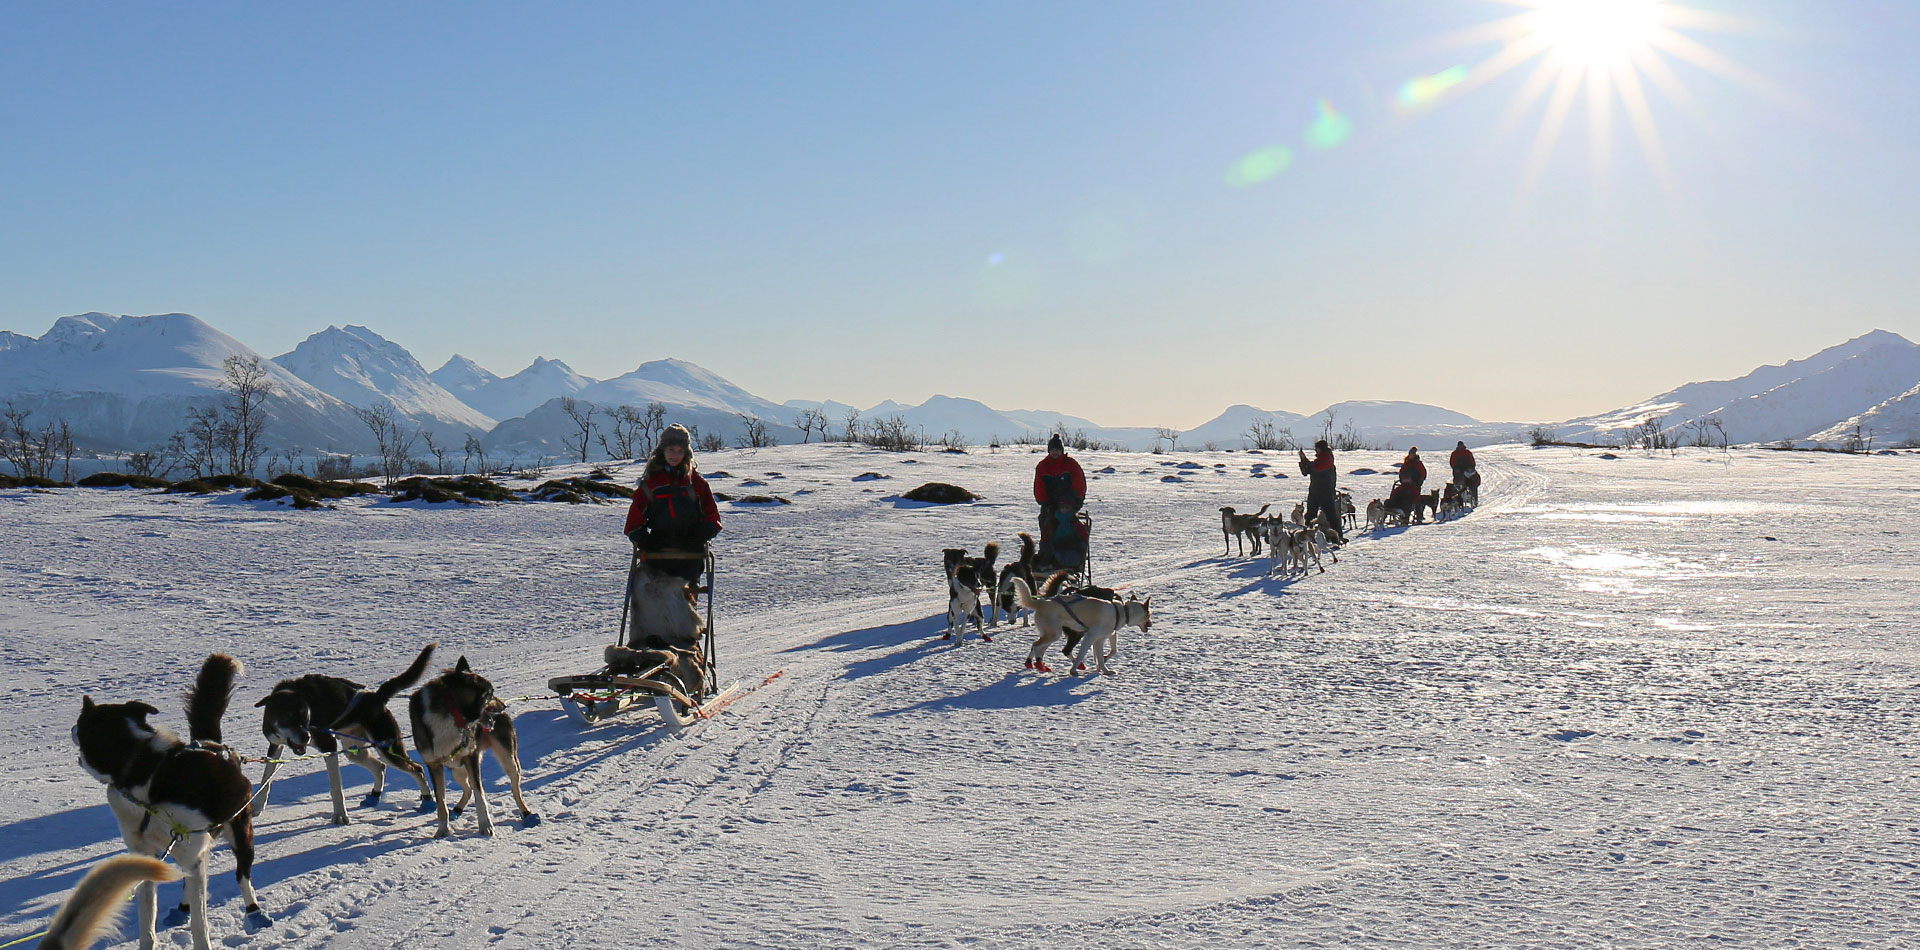 Dog sledding in Tromso, Norway, winter